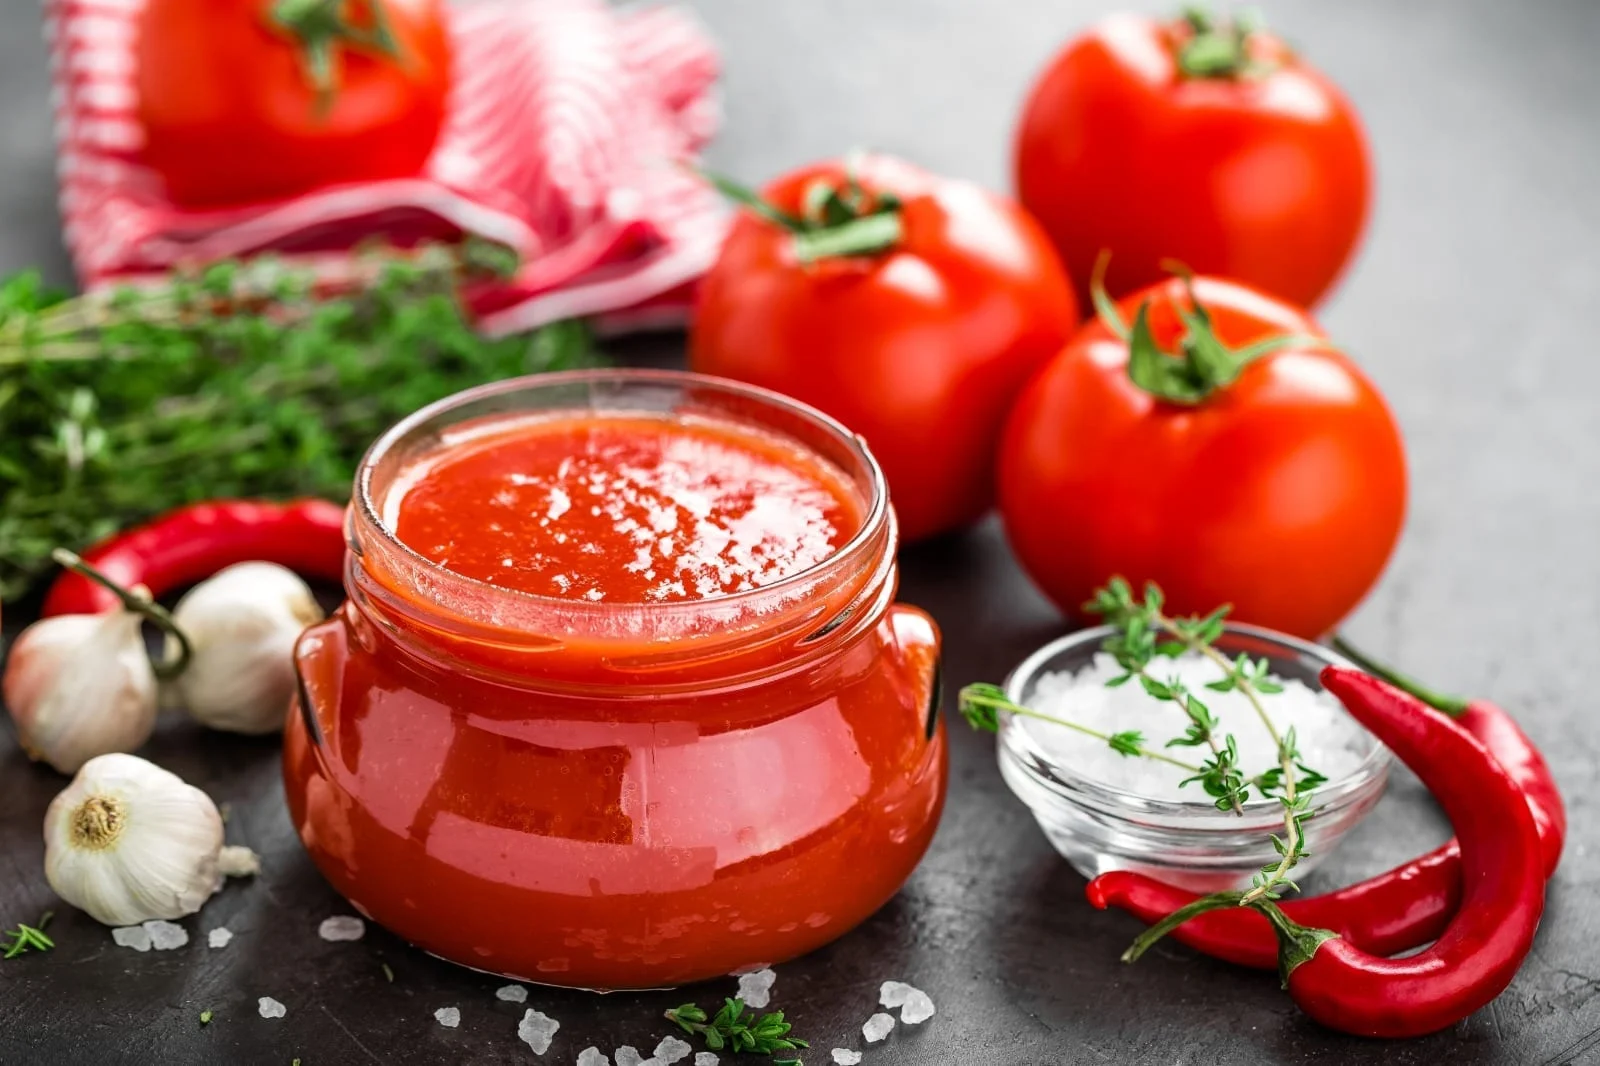 طريقة إعداد صلصة الطماطم دائمة الاستخدام في المنزل بمكونات موجودة في مطبخك